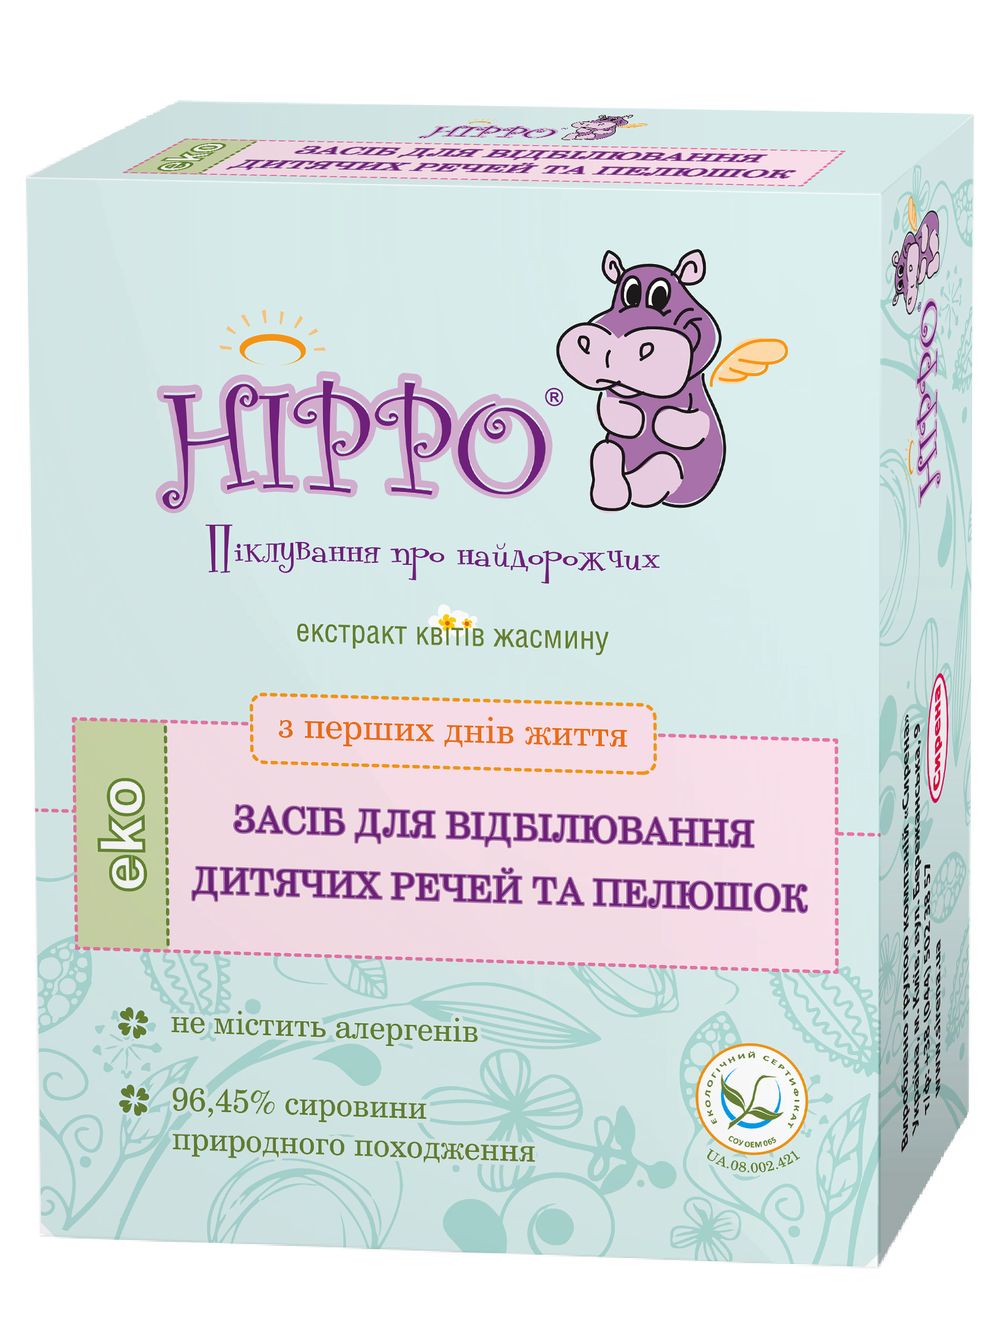 HIPPO ЕКО засіб для відбілювання дитячих речей і пелюшок з перших днів життя